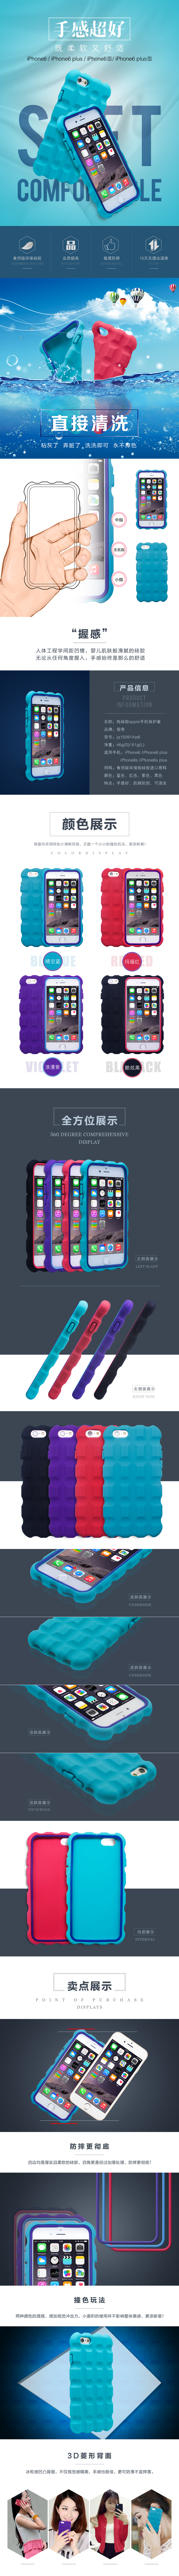 魔方造型iPhone6硅胶手机壳 详情页